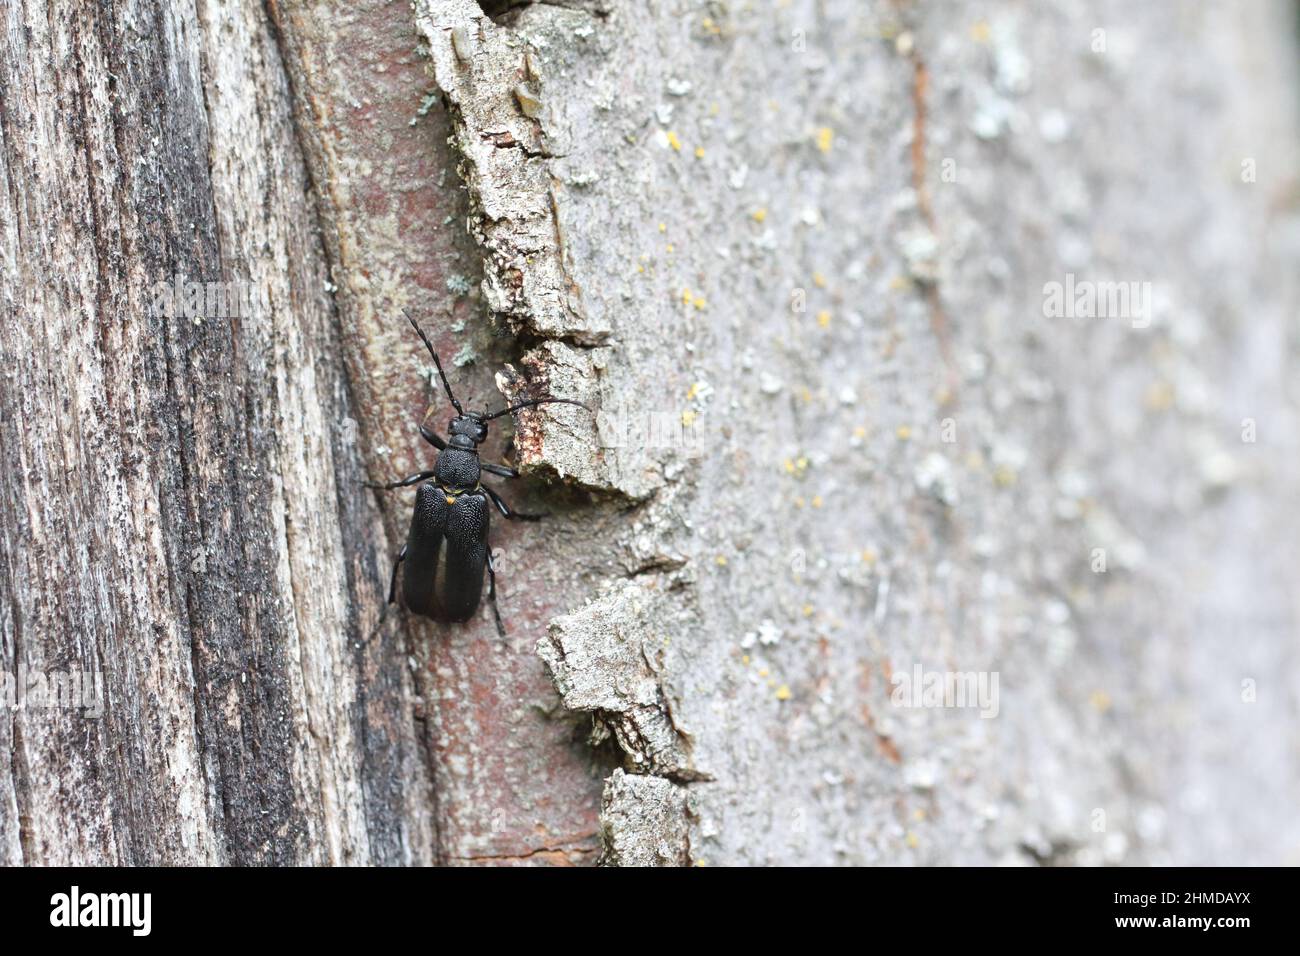 Stictoleptura scutellata ist eine Art von Blütenlanghornkäfer aus der Familie Cerambycidae, Unterfamilie Lepturinae. Stockfoto